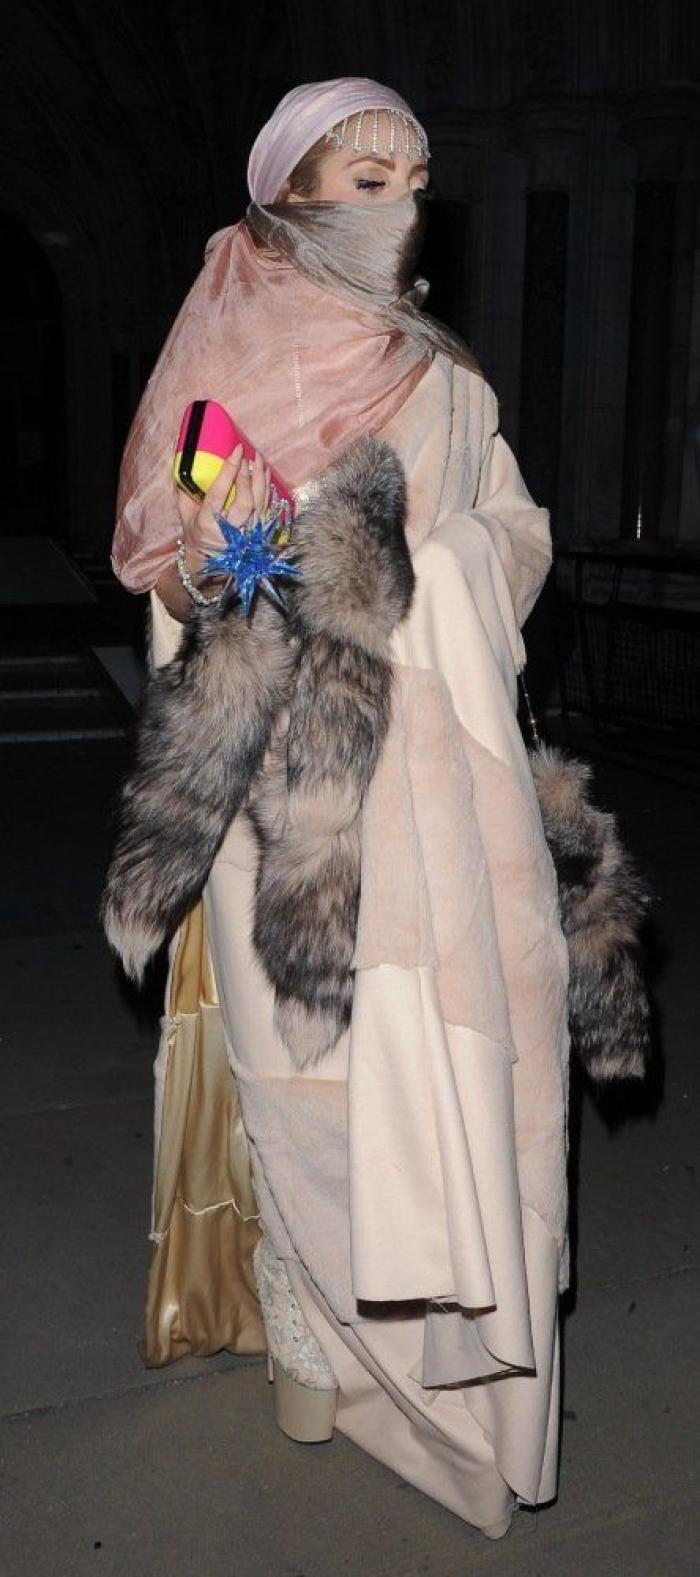 Lady Gaga y la marihuana: "Quiero crear, vestir divertida y fumar porros de mis amigos ricos" (FOTOS, VÍDEO)